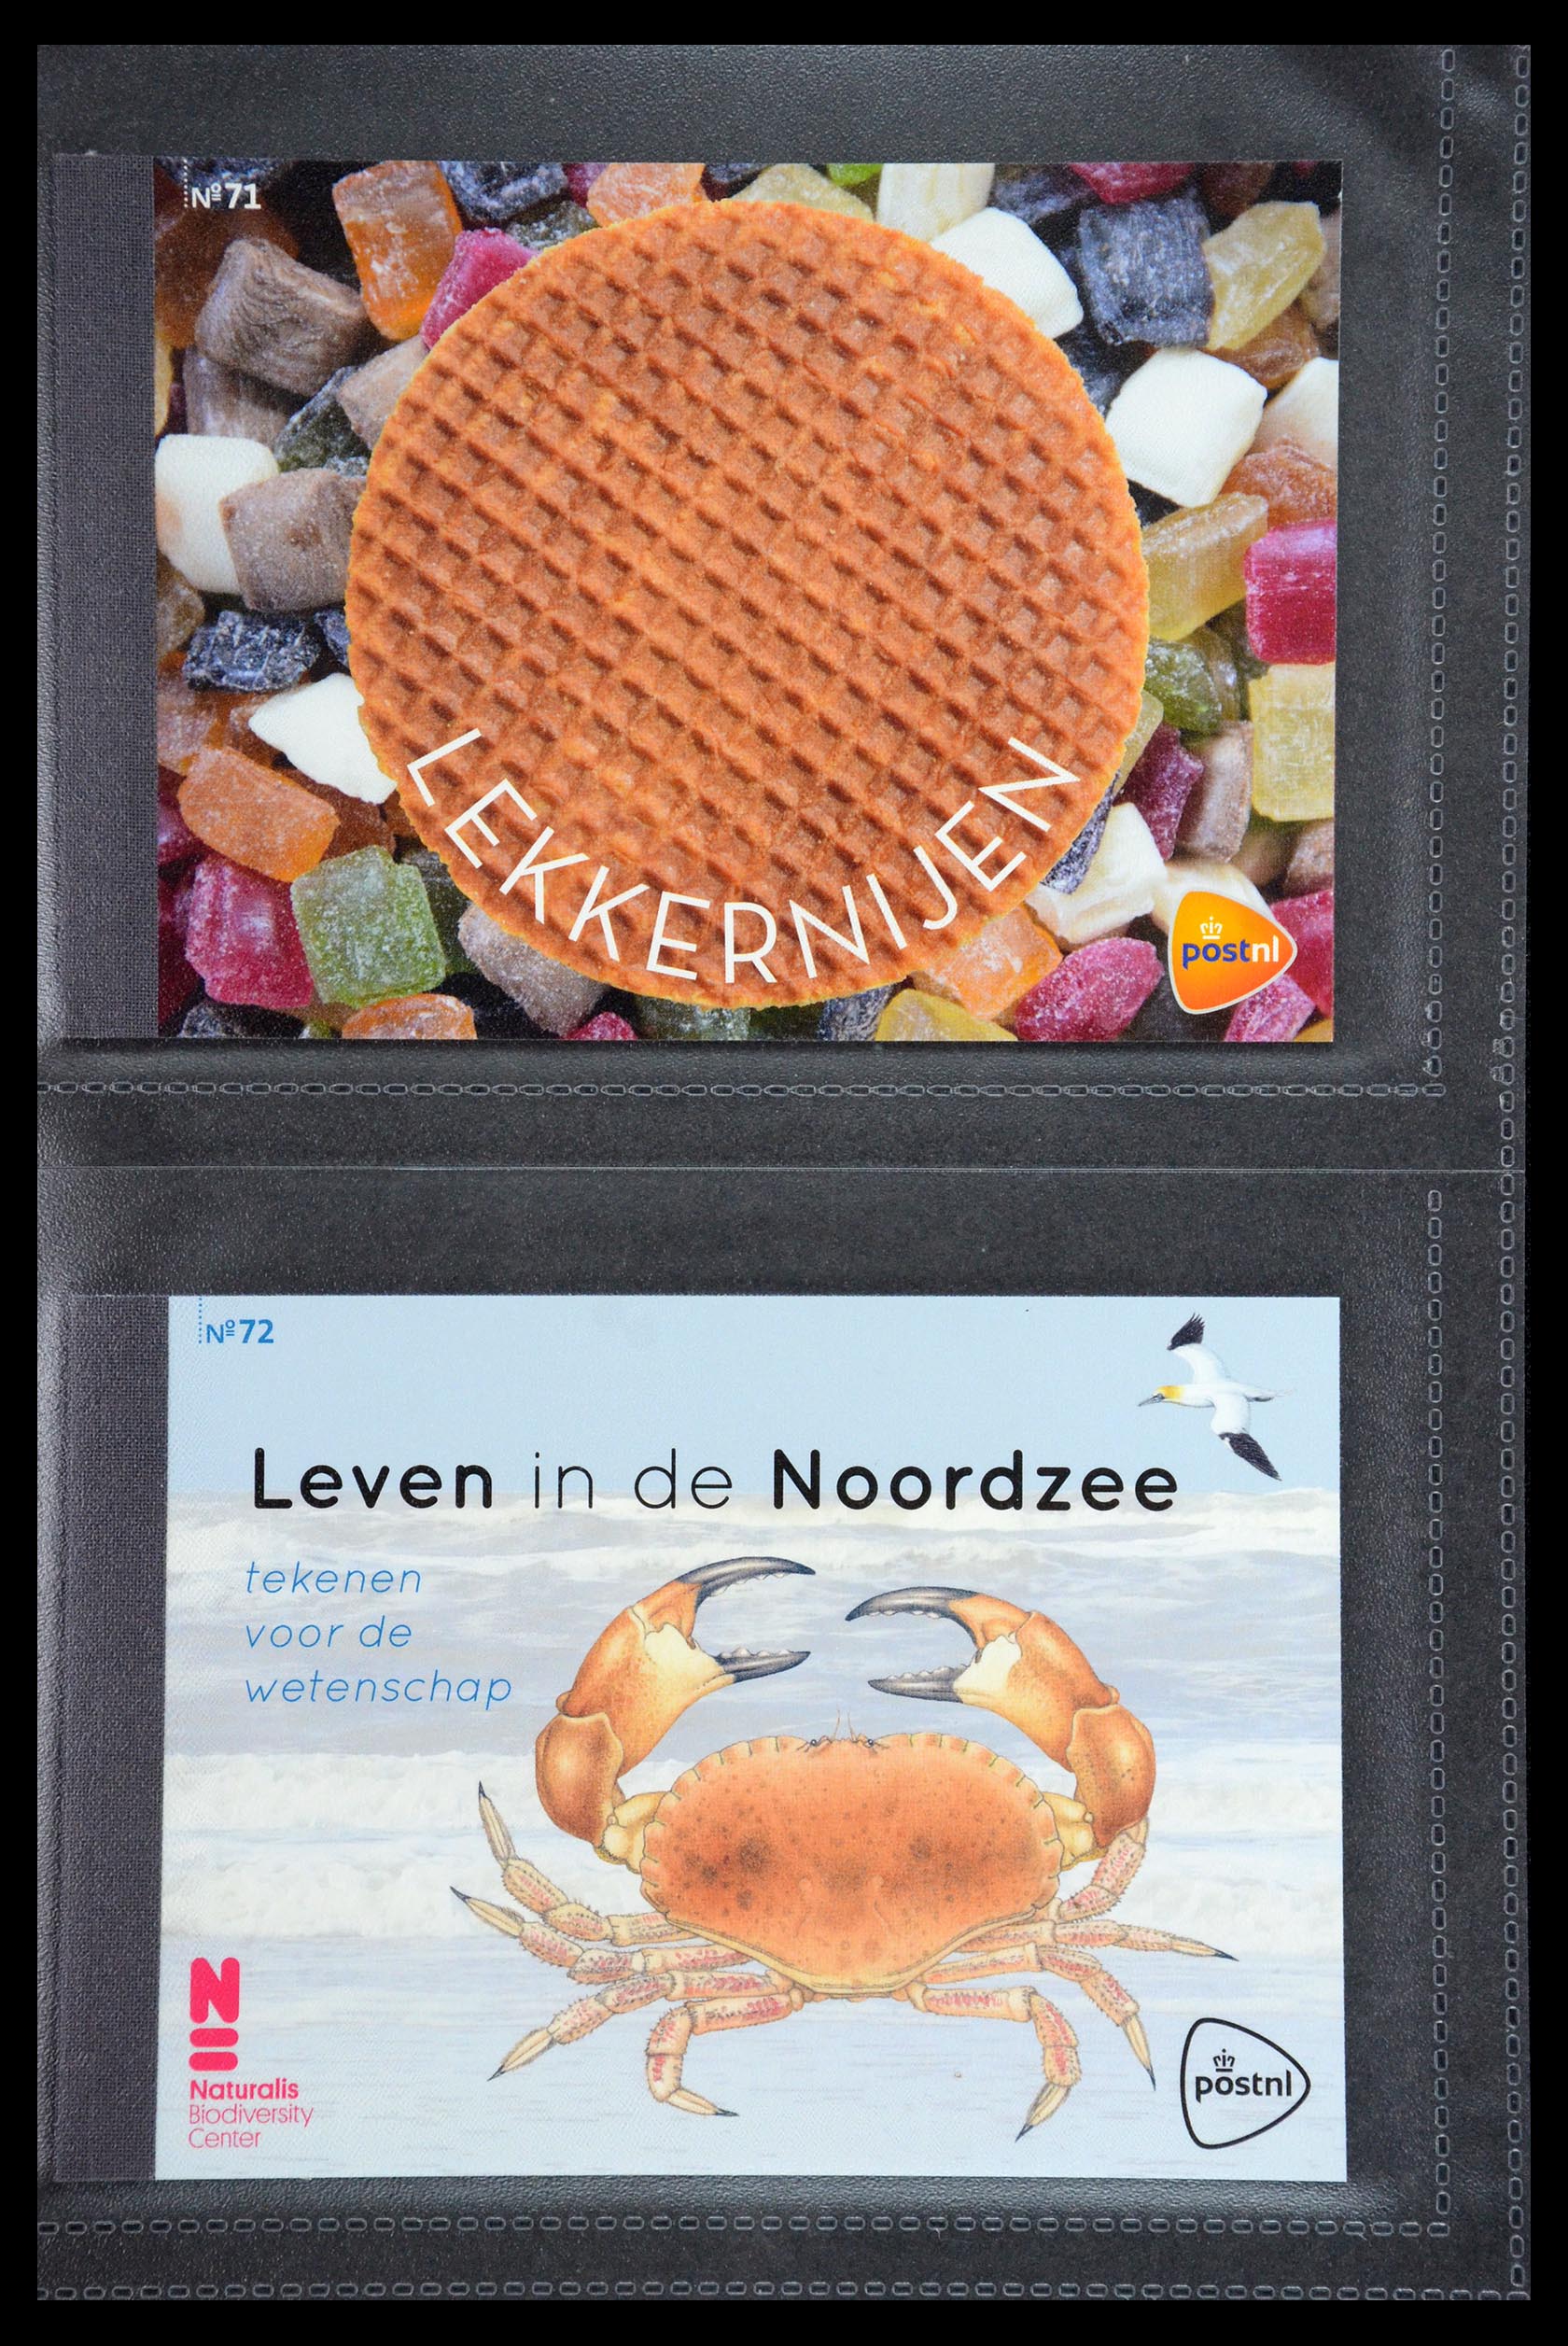 35945 036 - Stamp Collection 35945 Netherlands prestige booklets 2013-2019.